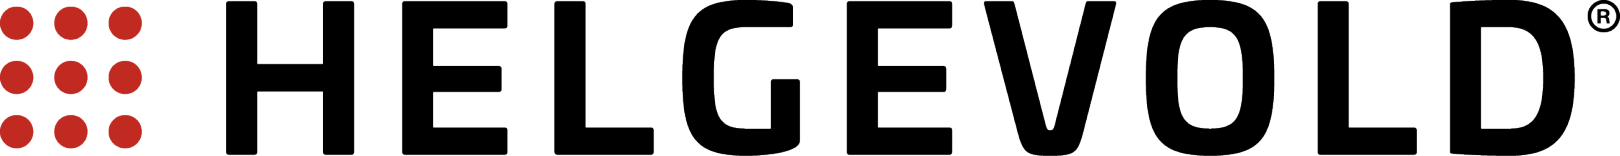 Helgevold Gruppen logo